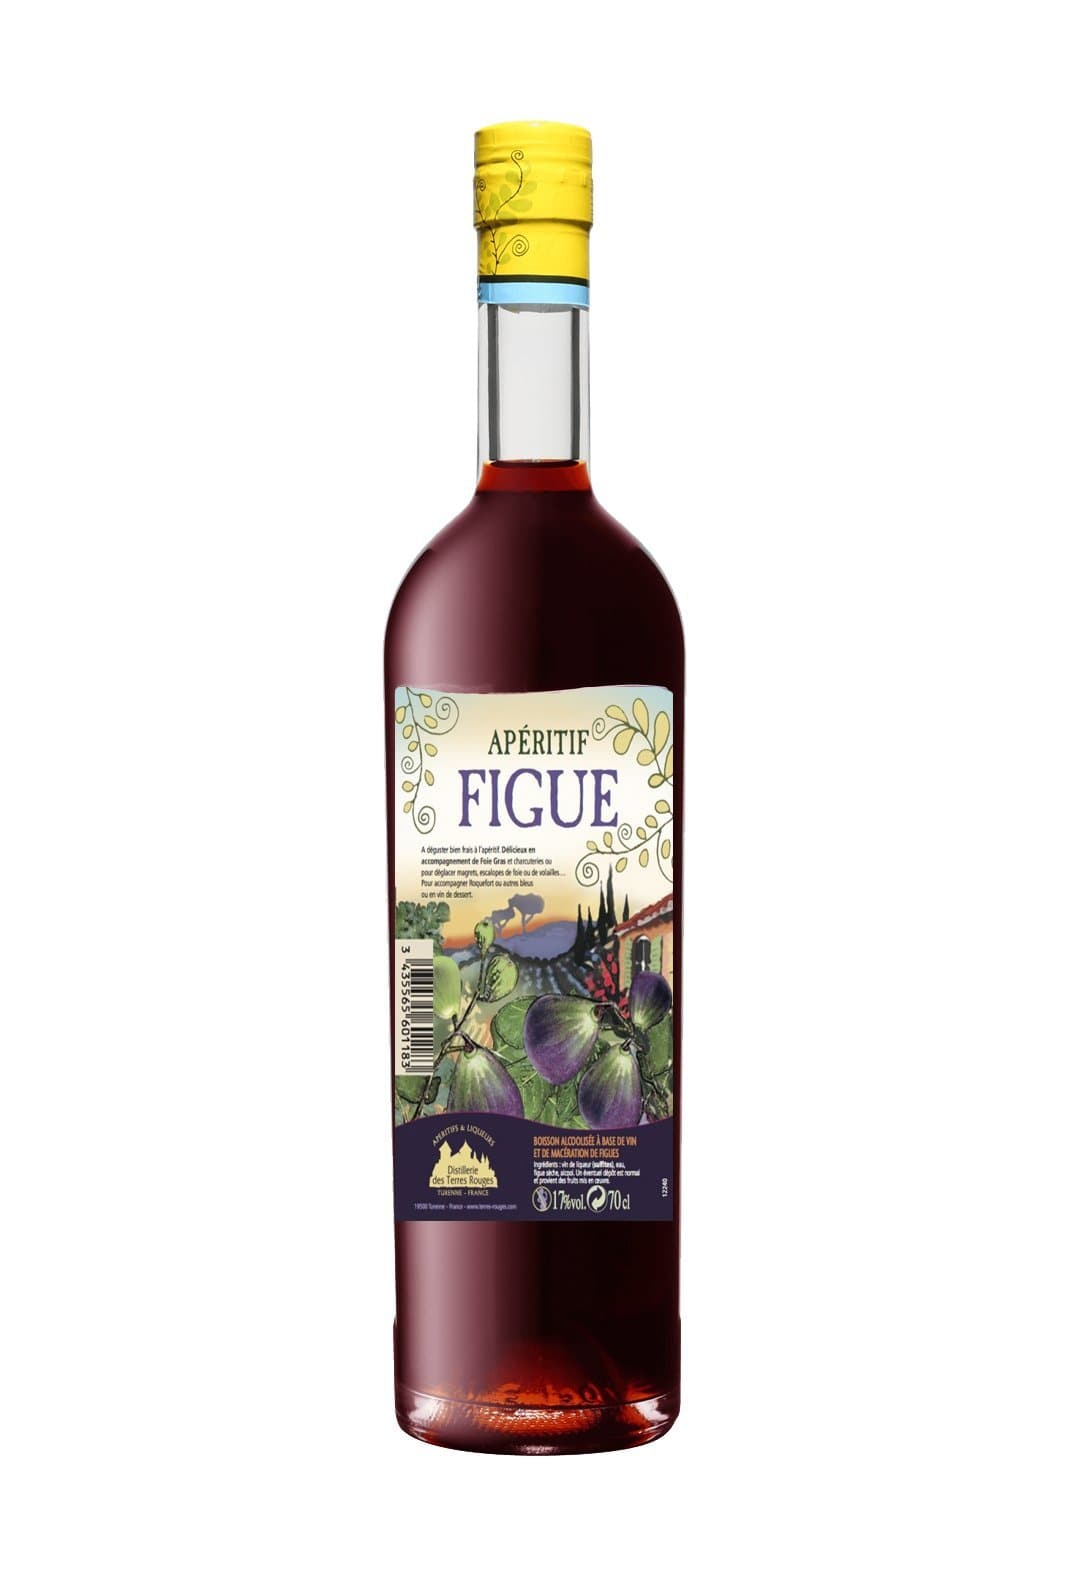 Vedrenne-Terres Rouge Aperitif Figue (Fig) 17% 700ml | Liqueurs | Shop online at Spirits of France